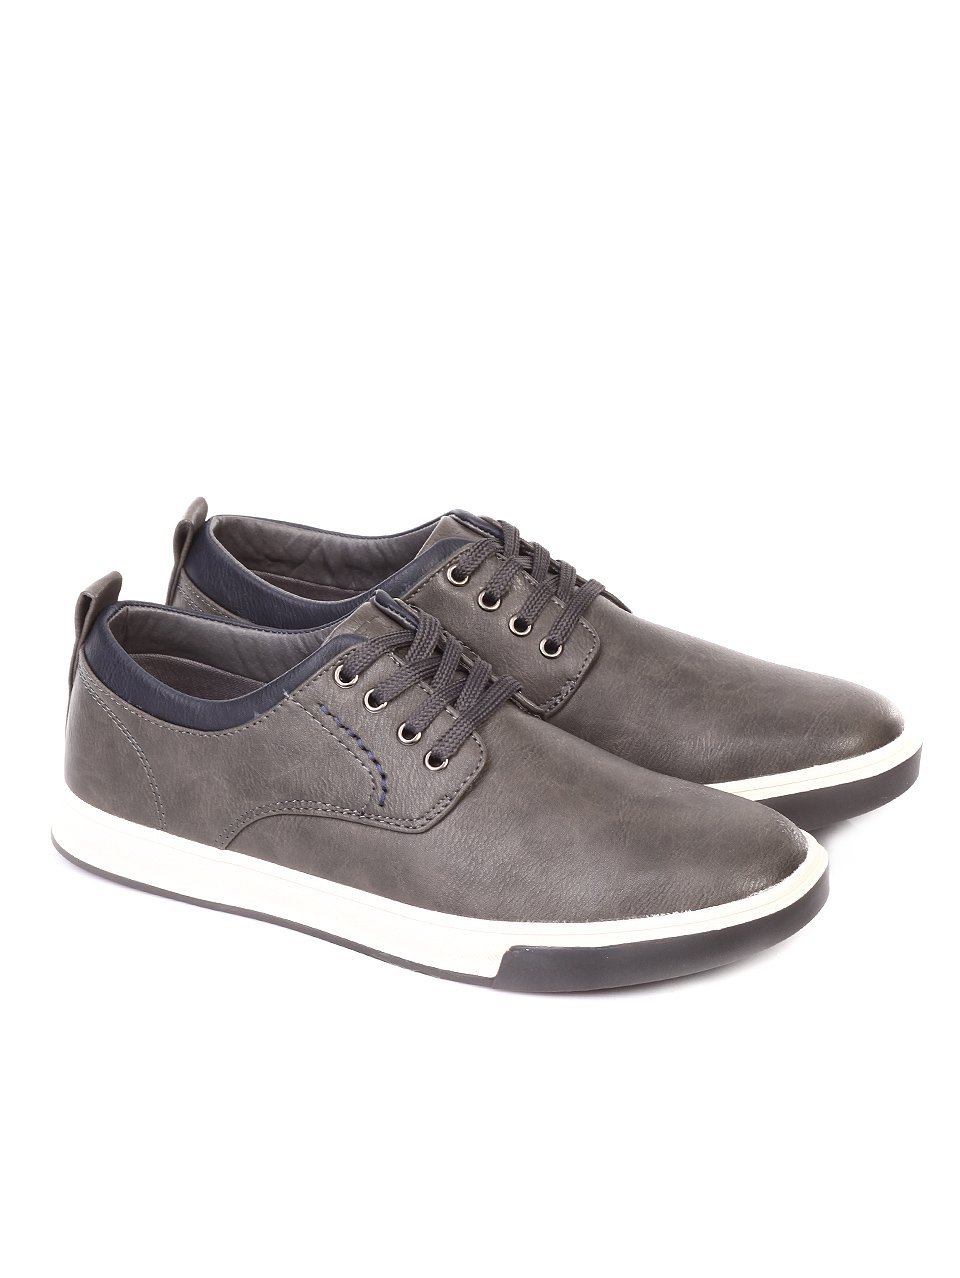 Ежедневни мъжки обувки в сиво 7N-18115 grey